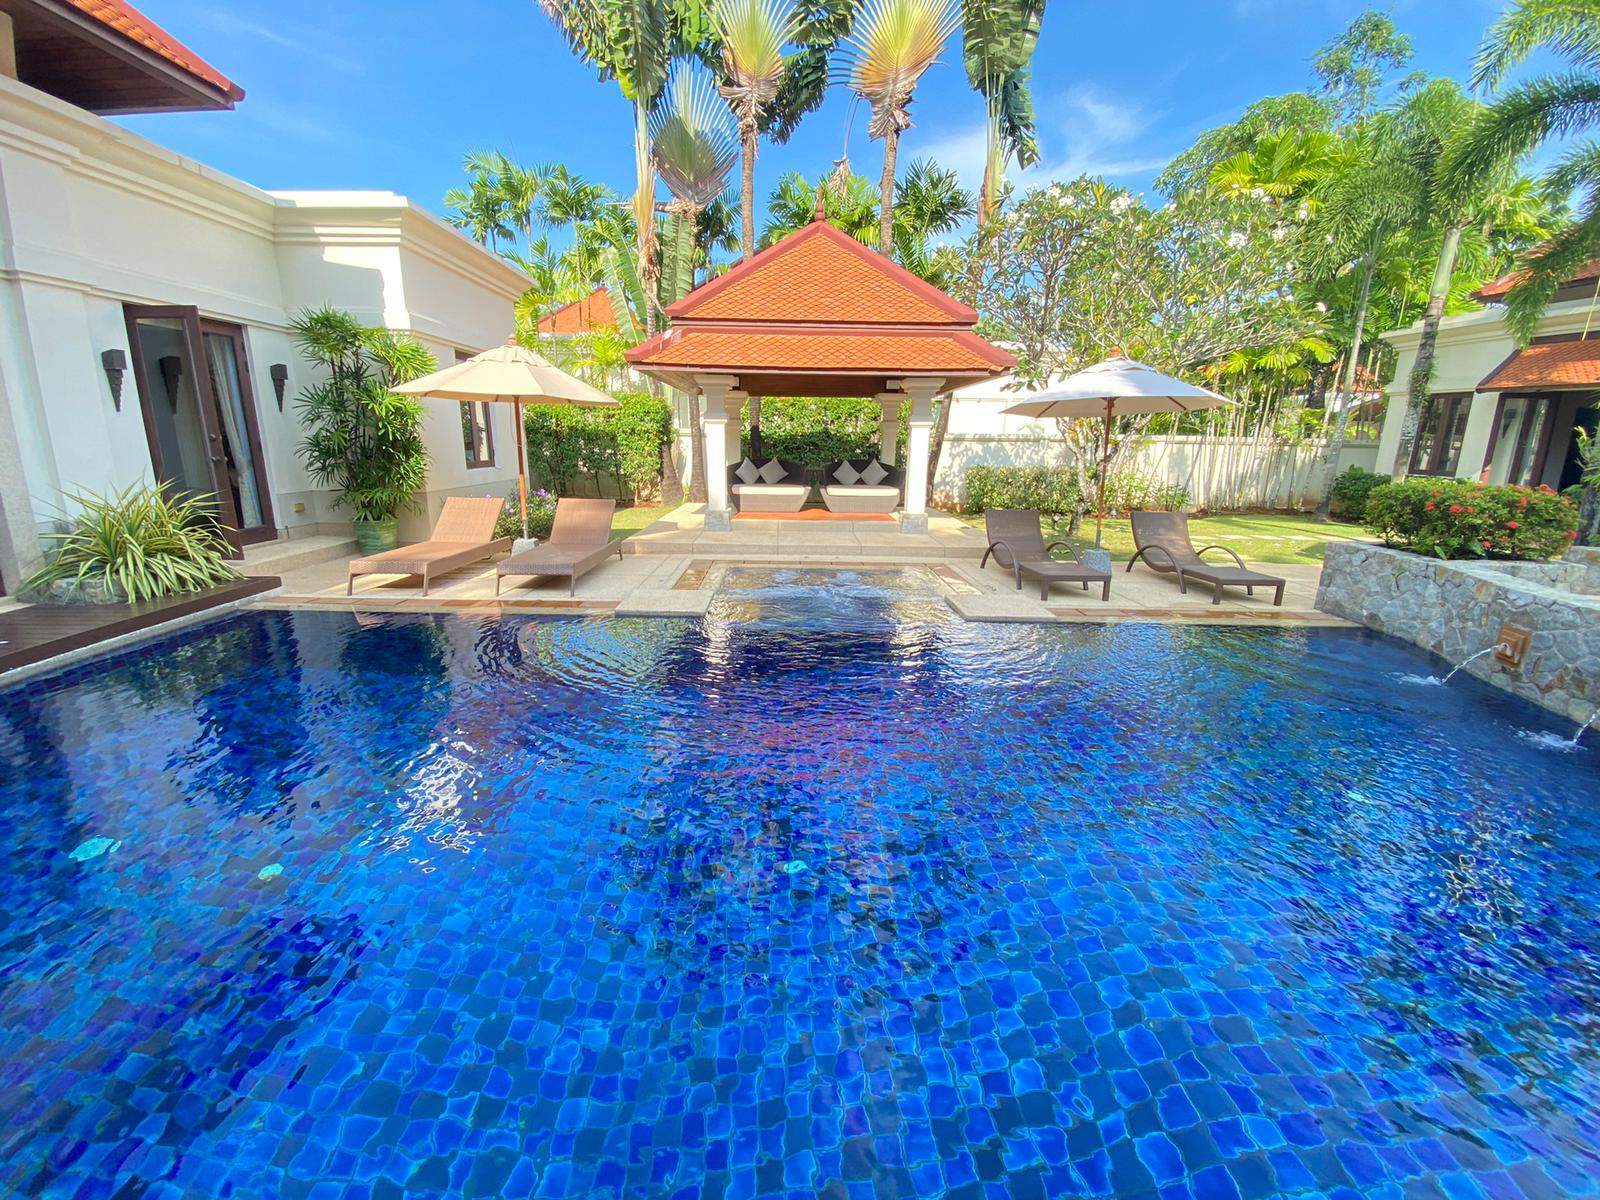 Rent villa Sai Taan 18, Thailand, Phuket, Bang Tao | Villacarte